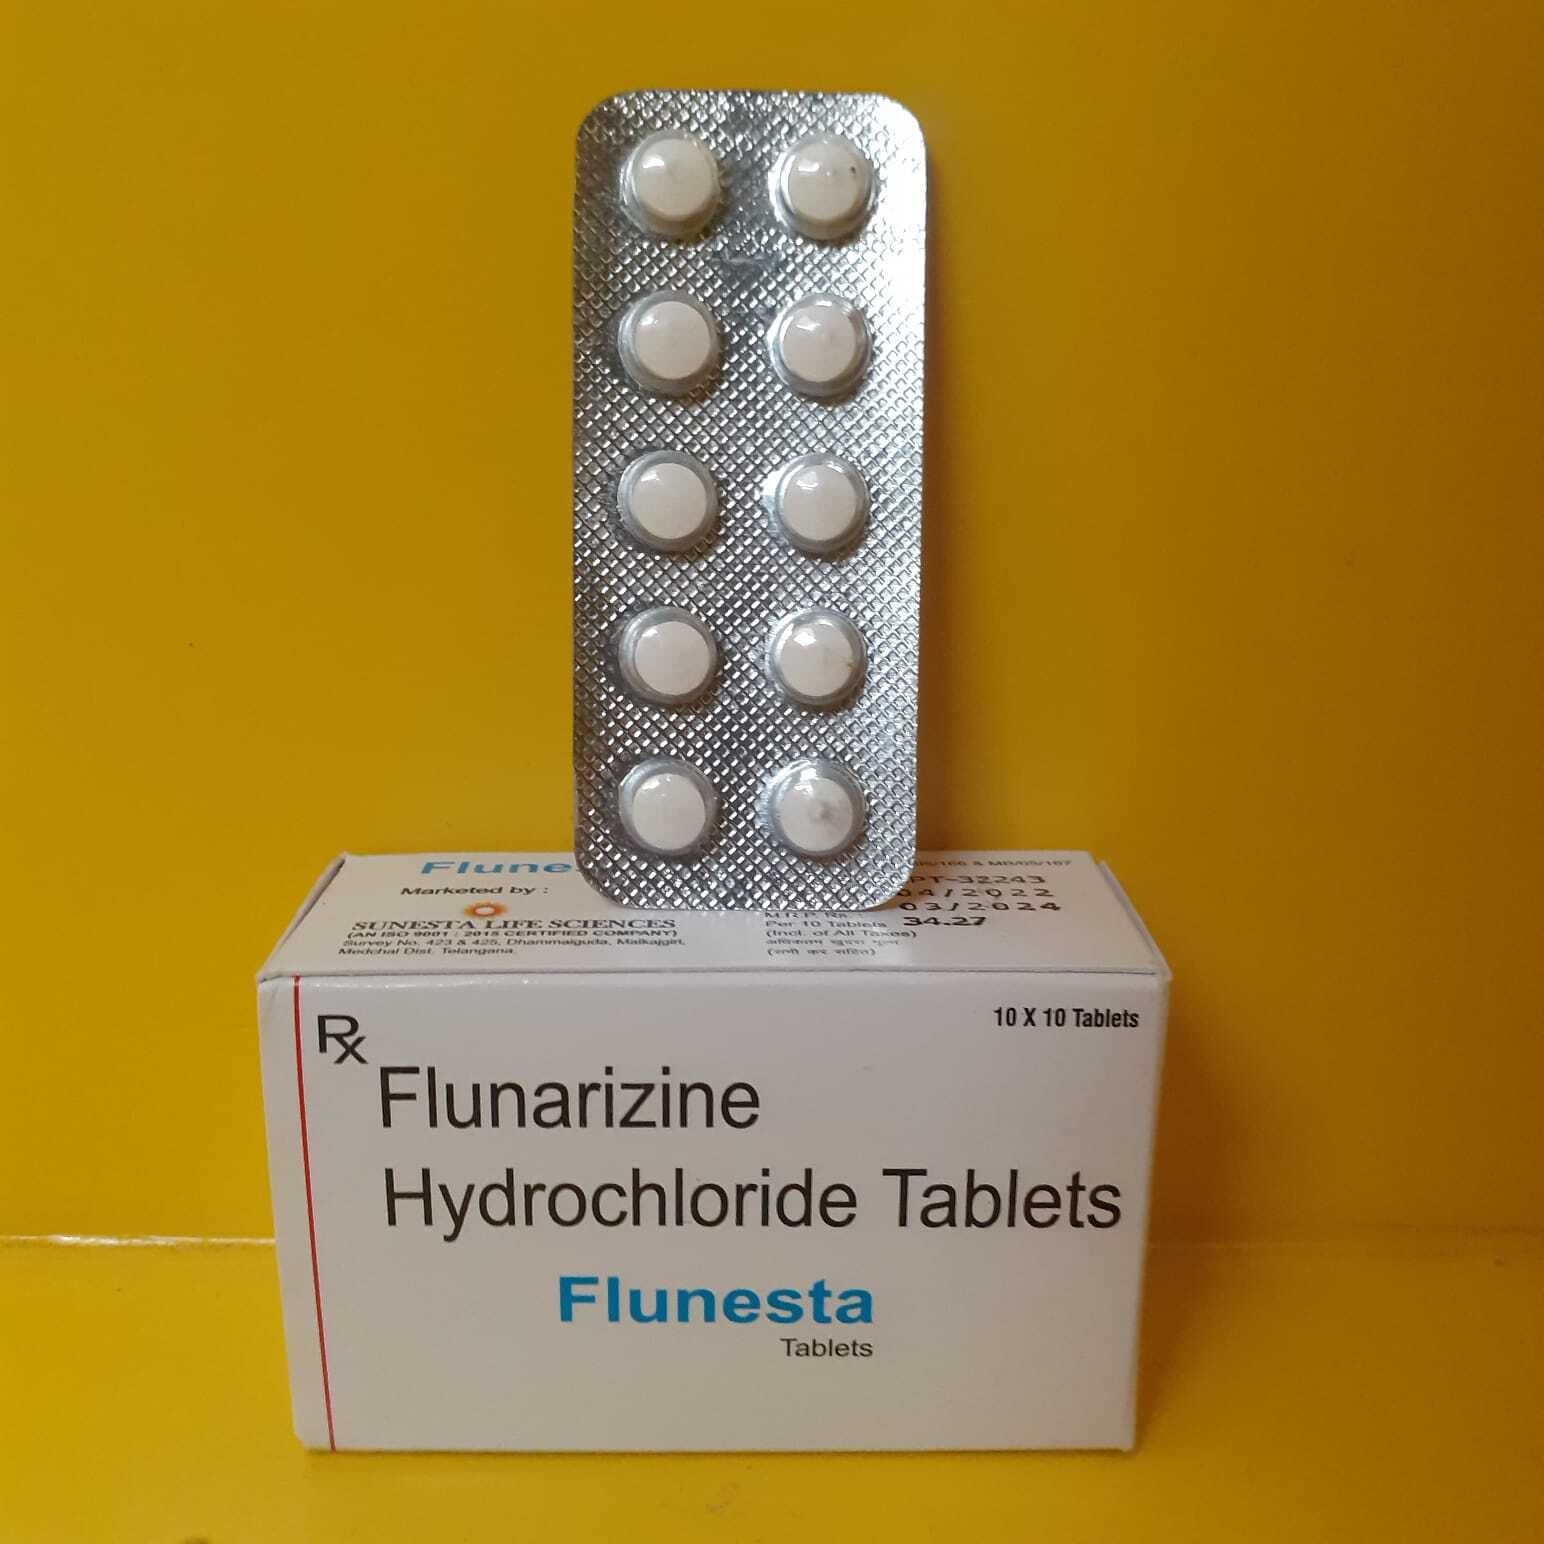 Flunarizine tablets